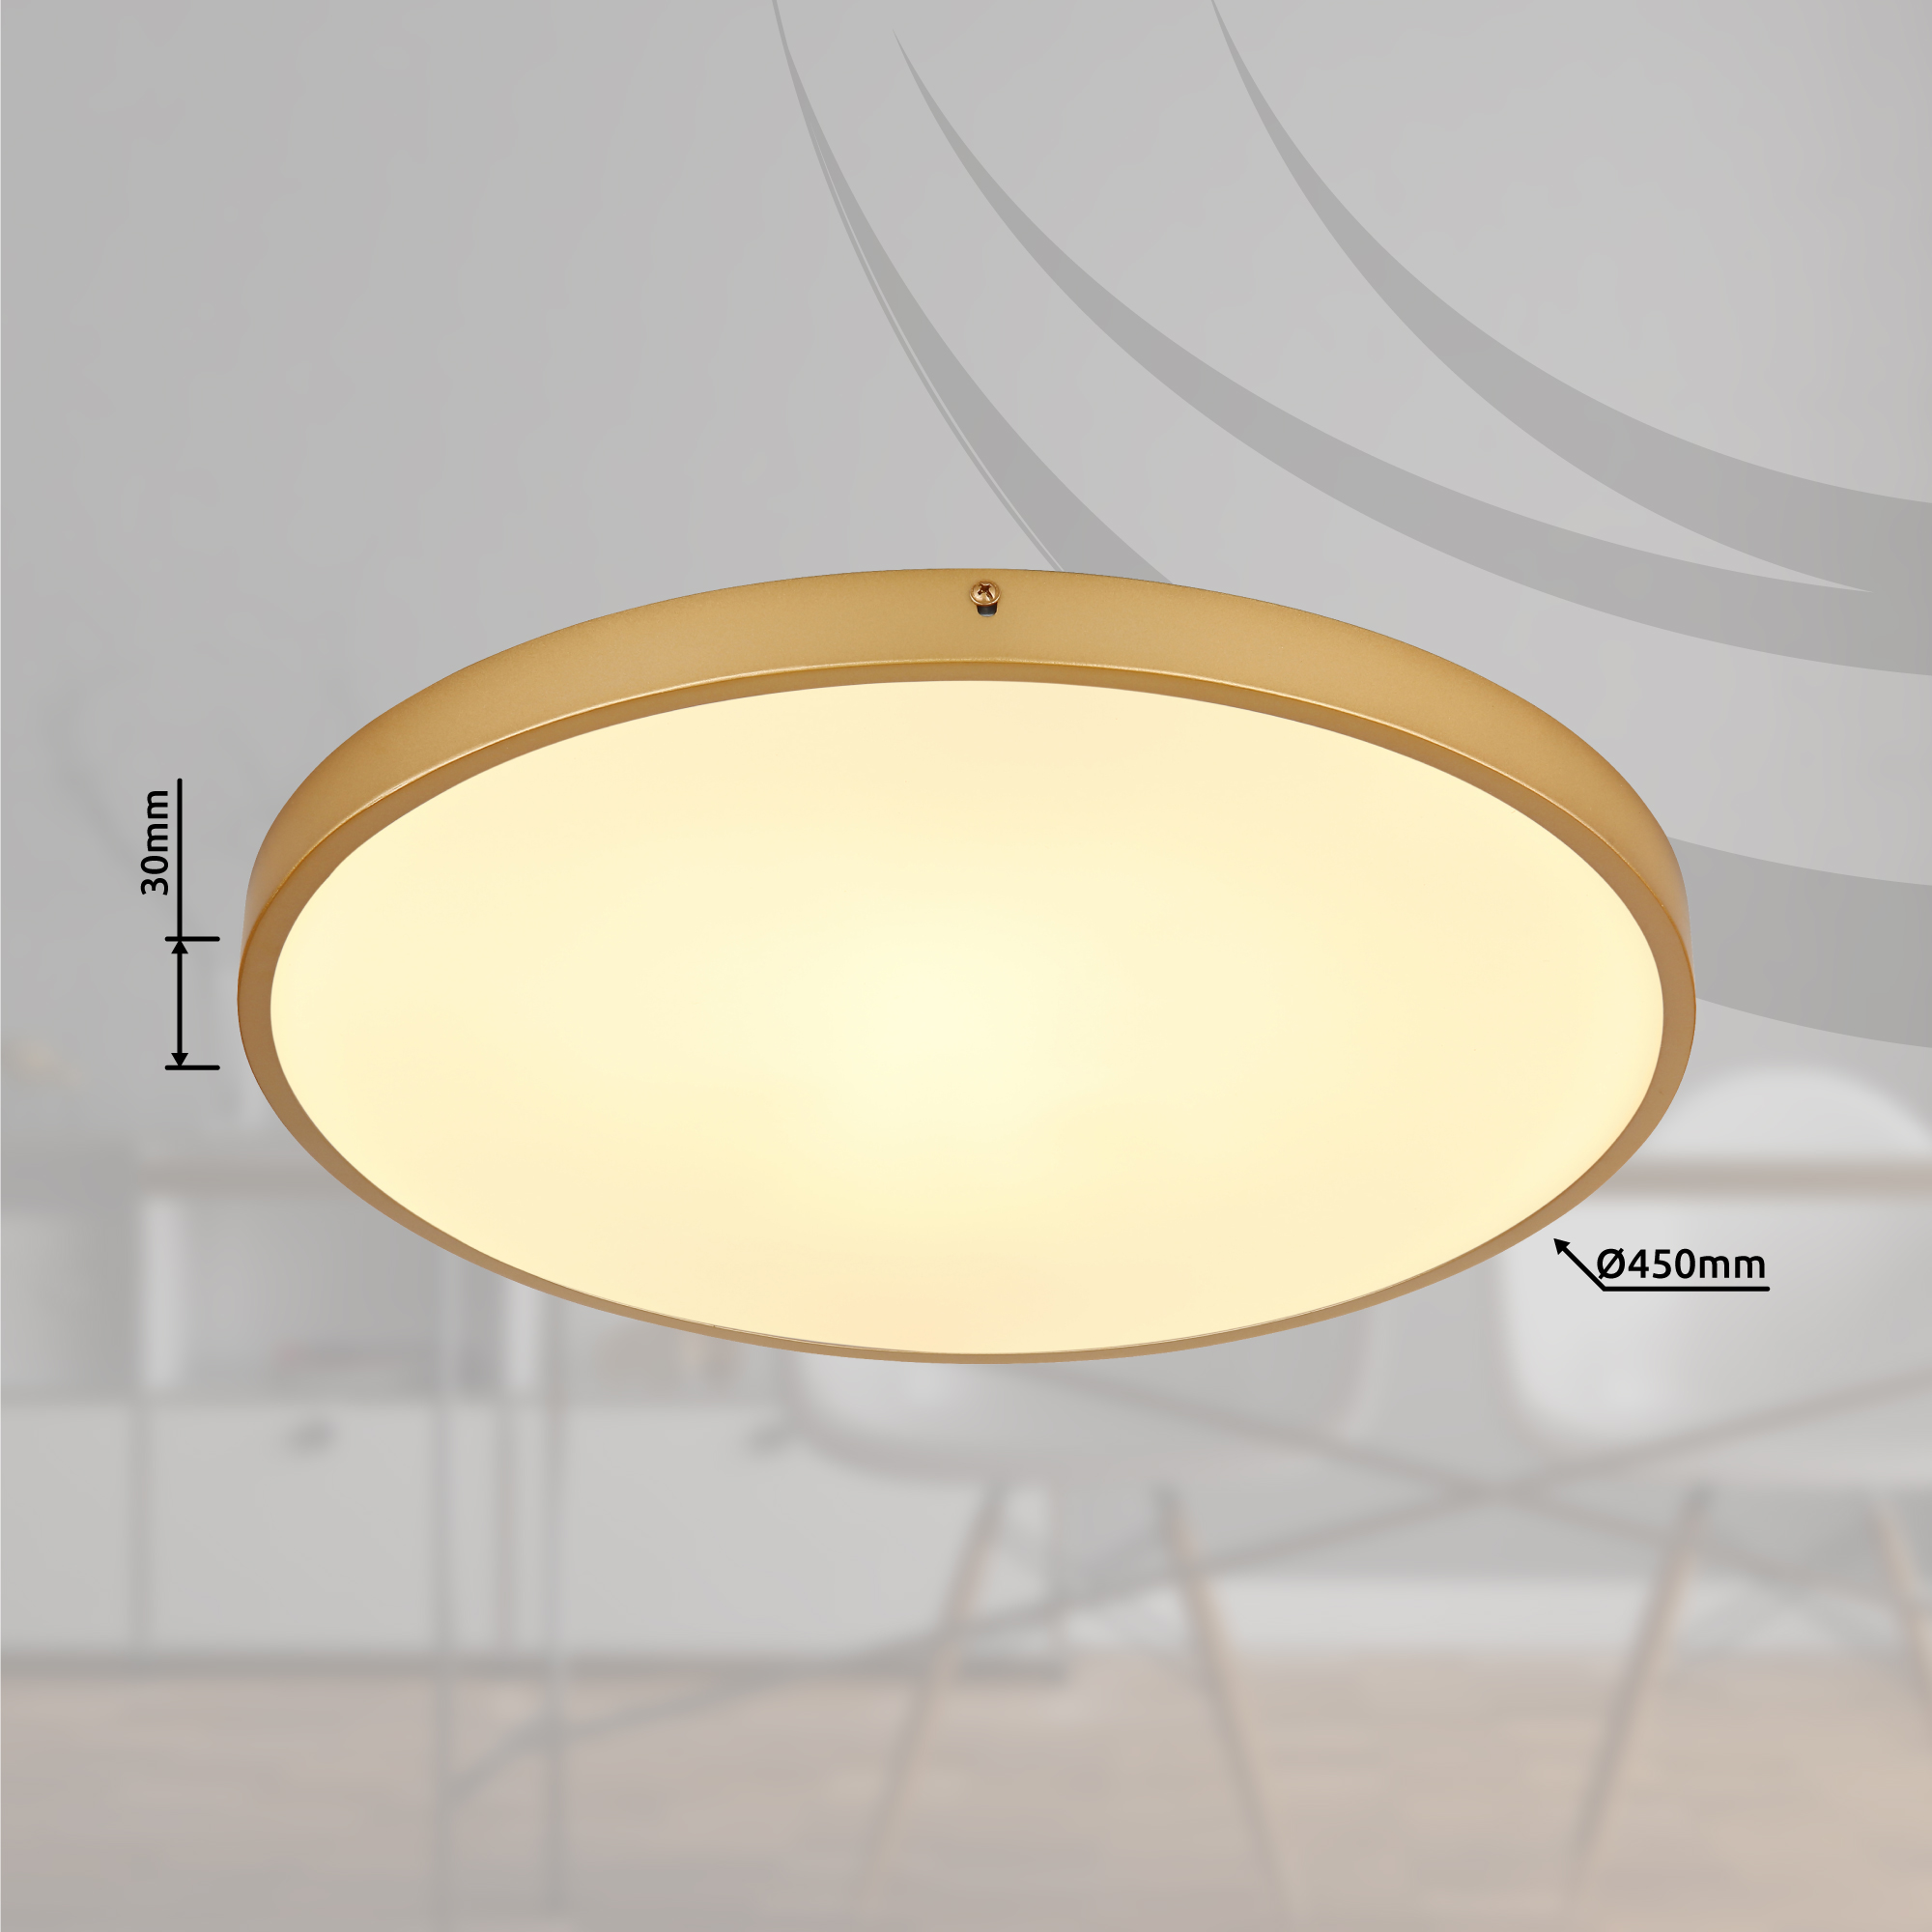 LED metal ceiling 12381-30 light matt, - brass-coloured